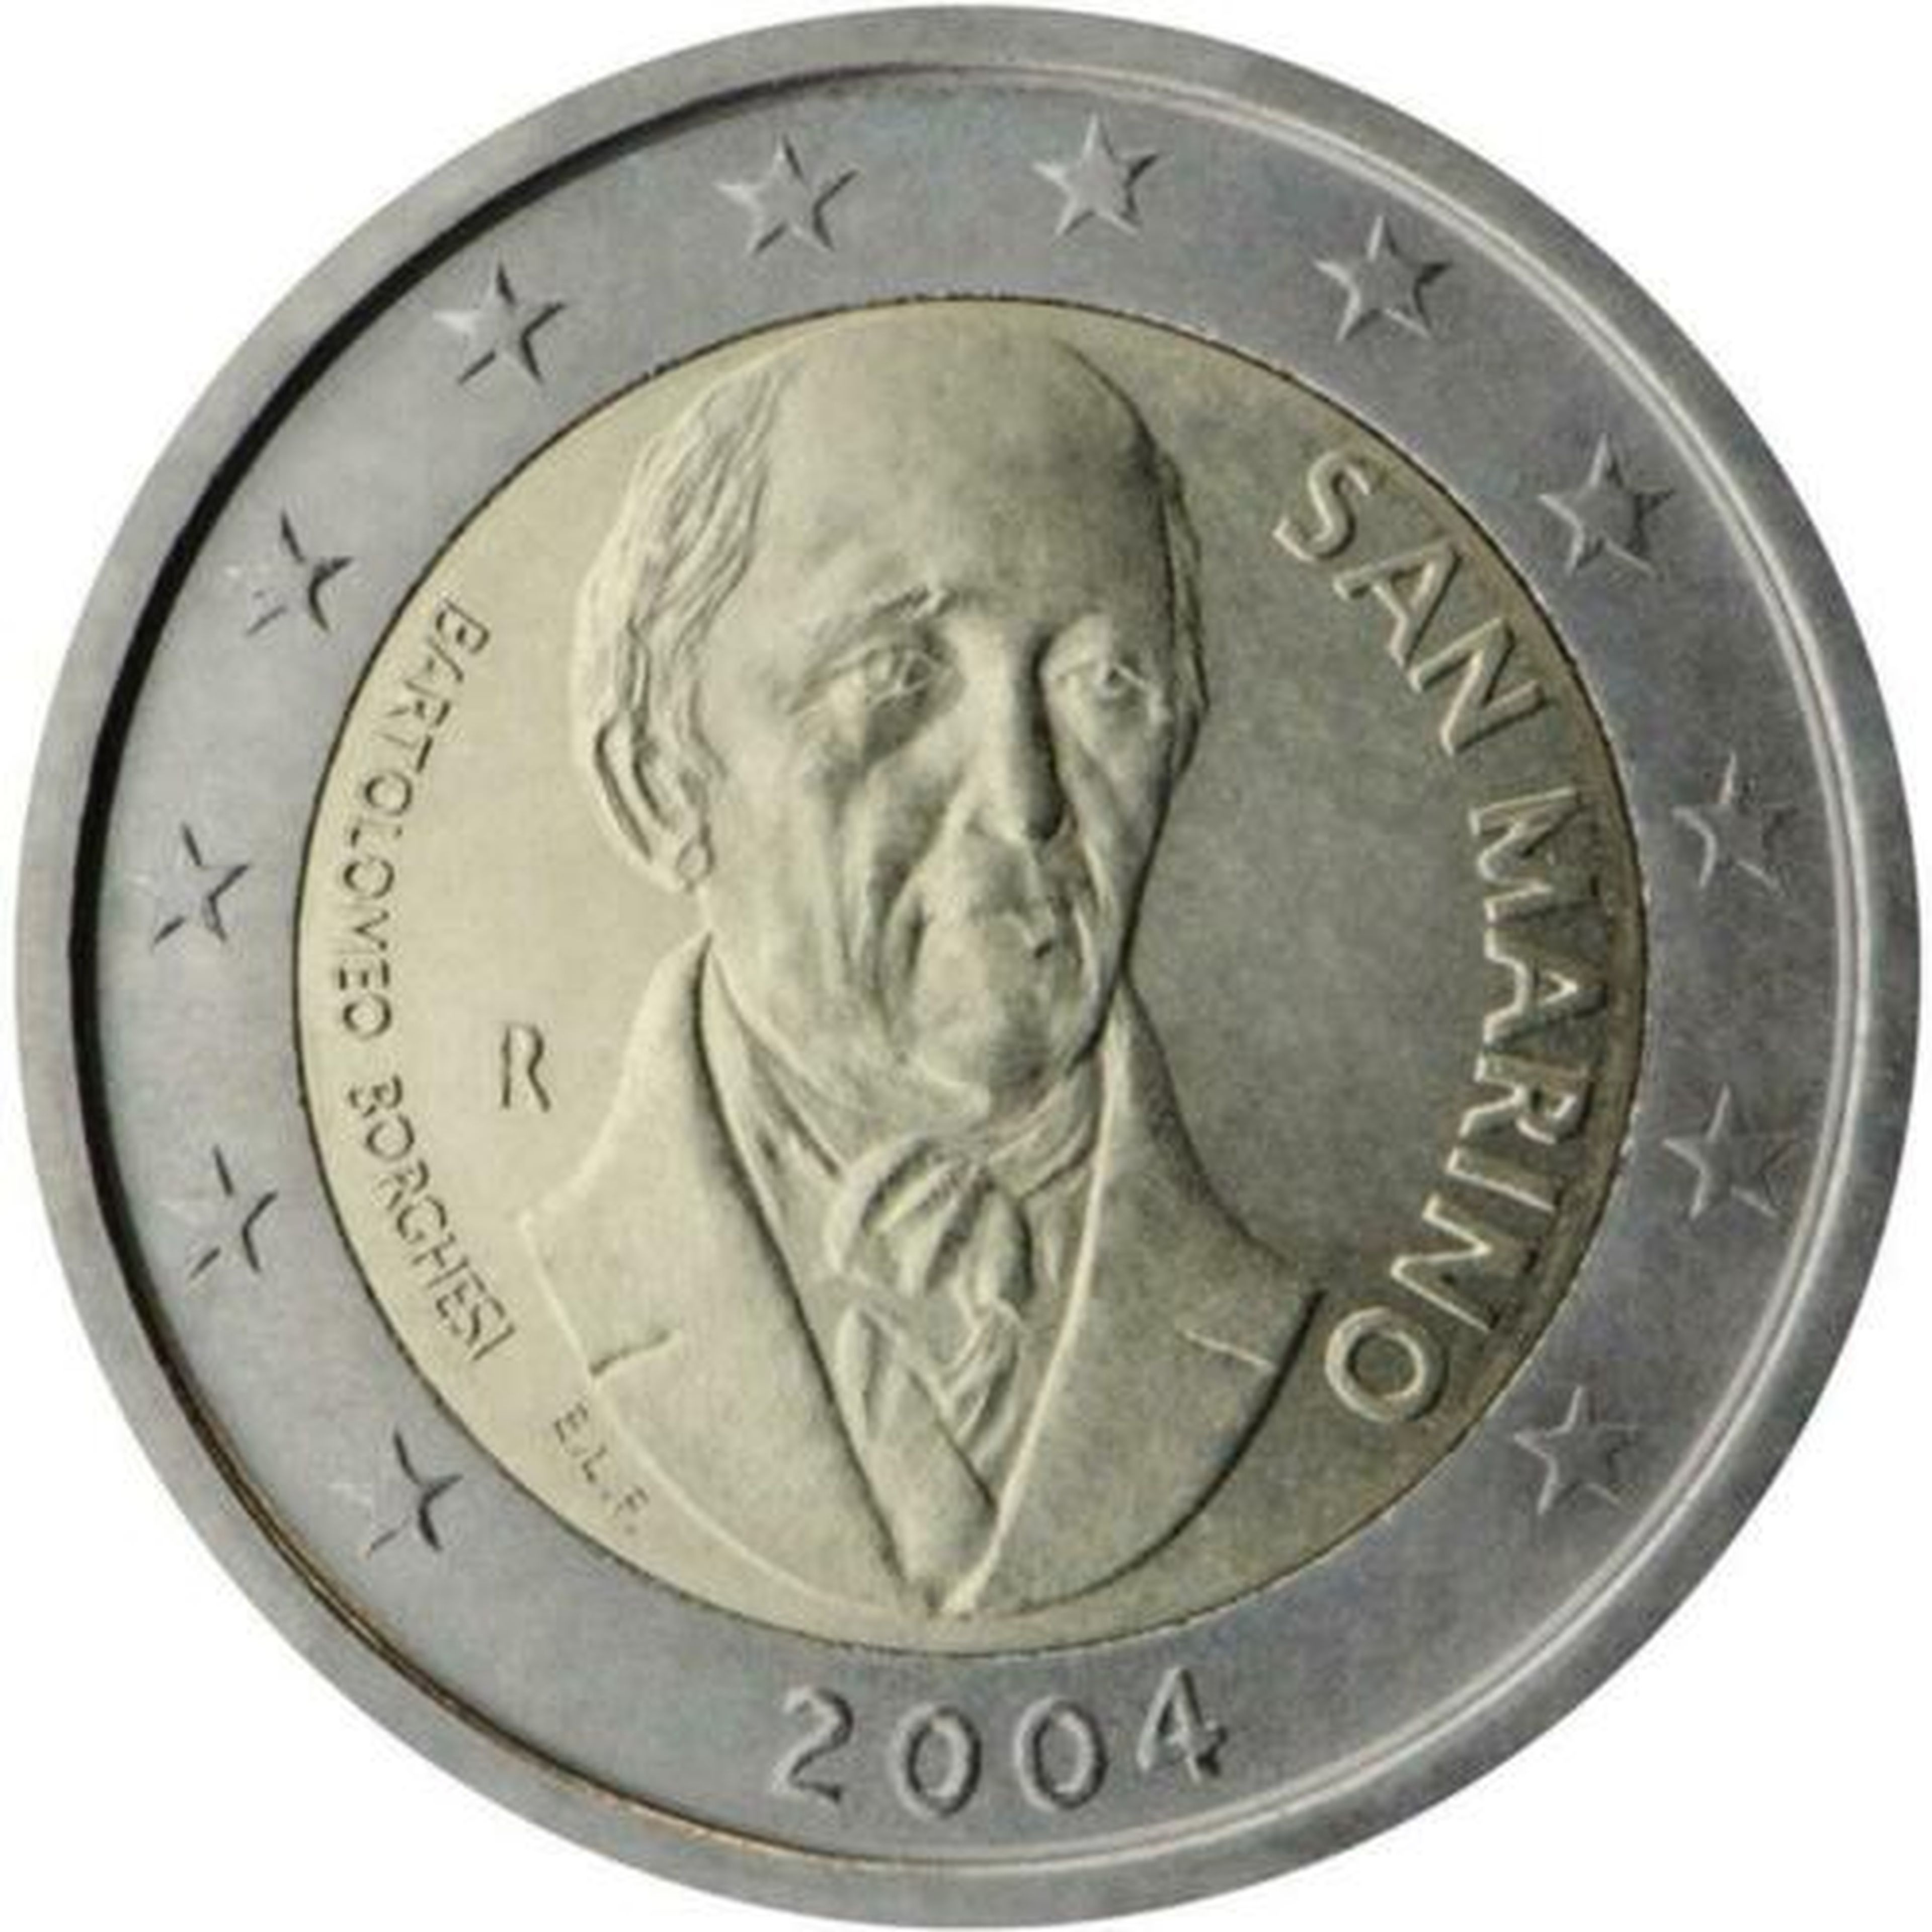 Moneda San Marino 2004